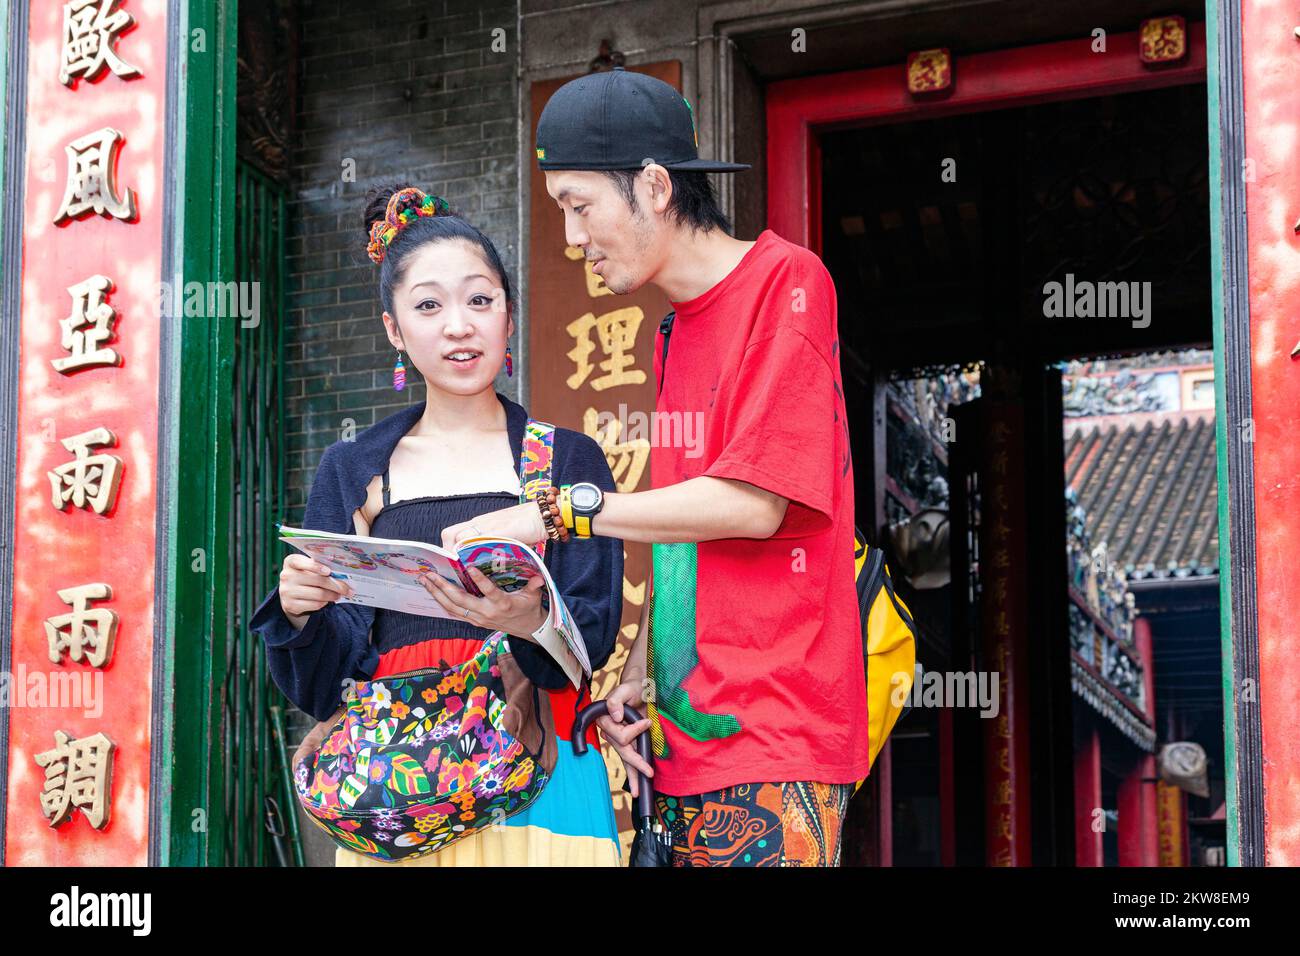 Guide de lecture de couple touristique asiatique, temple Hoi Quan Tue Thanh, Ho Chi Minh ville, Vietnam Banque D'Images